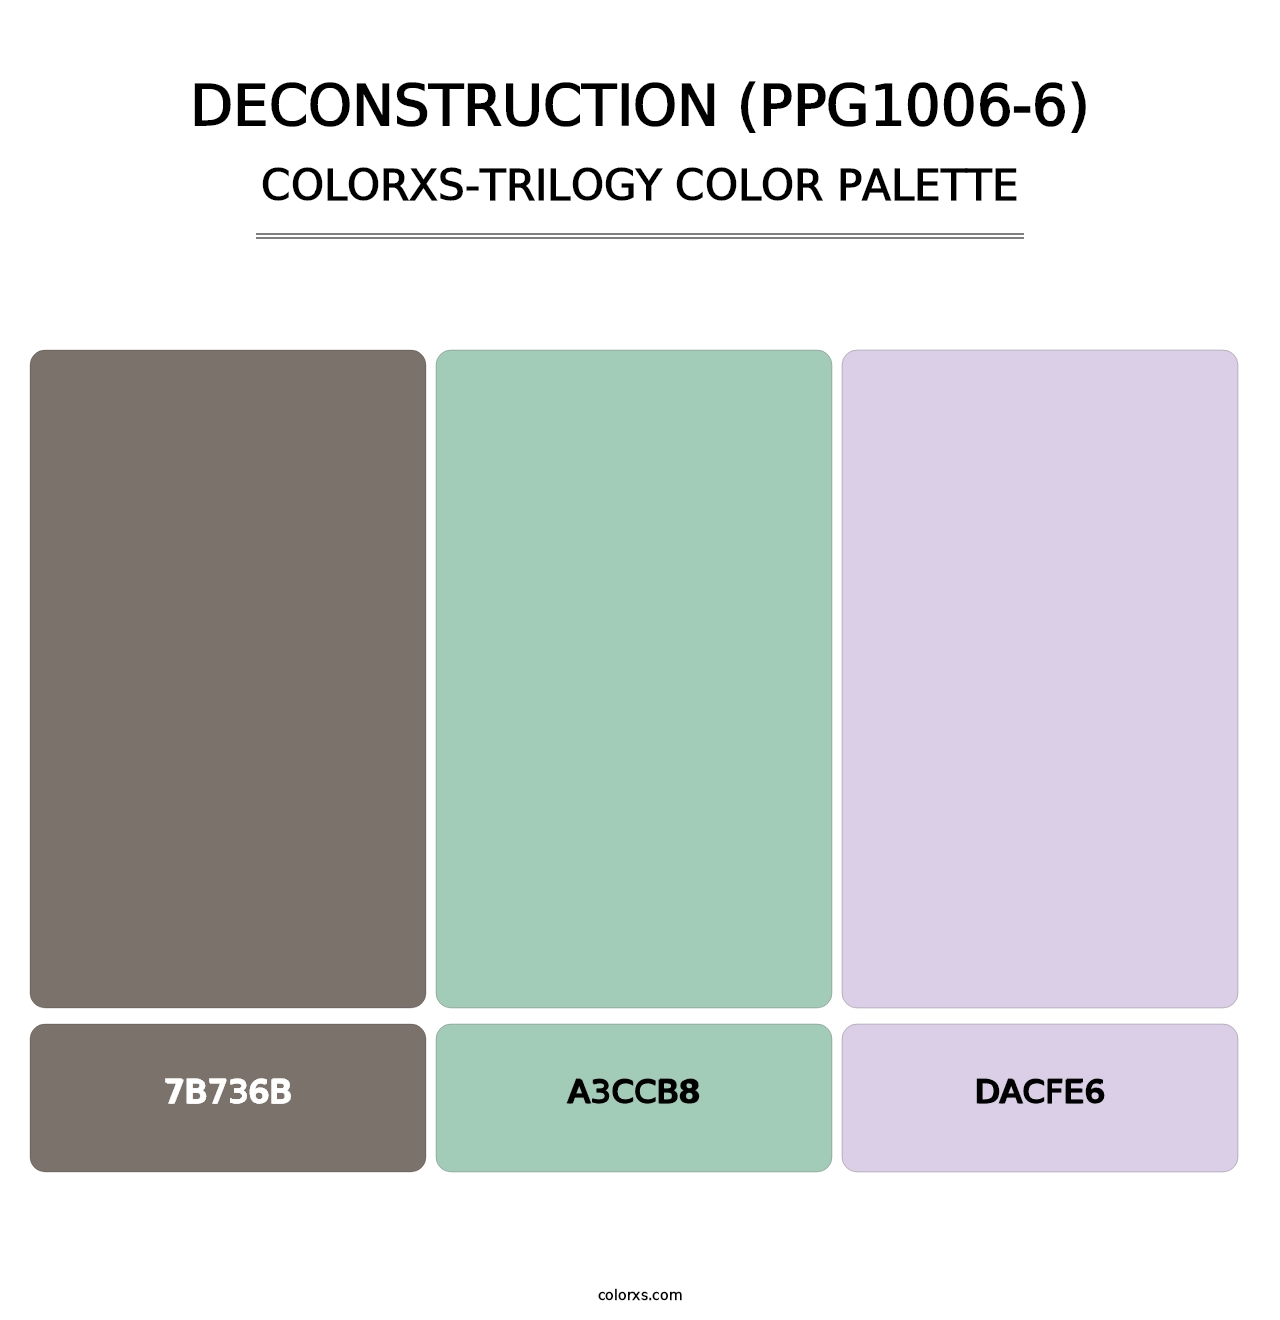 Deconstruction (PPG1006-6) - Colorxs Trilogy Palette